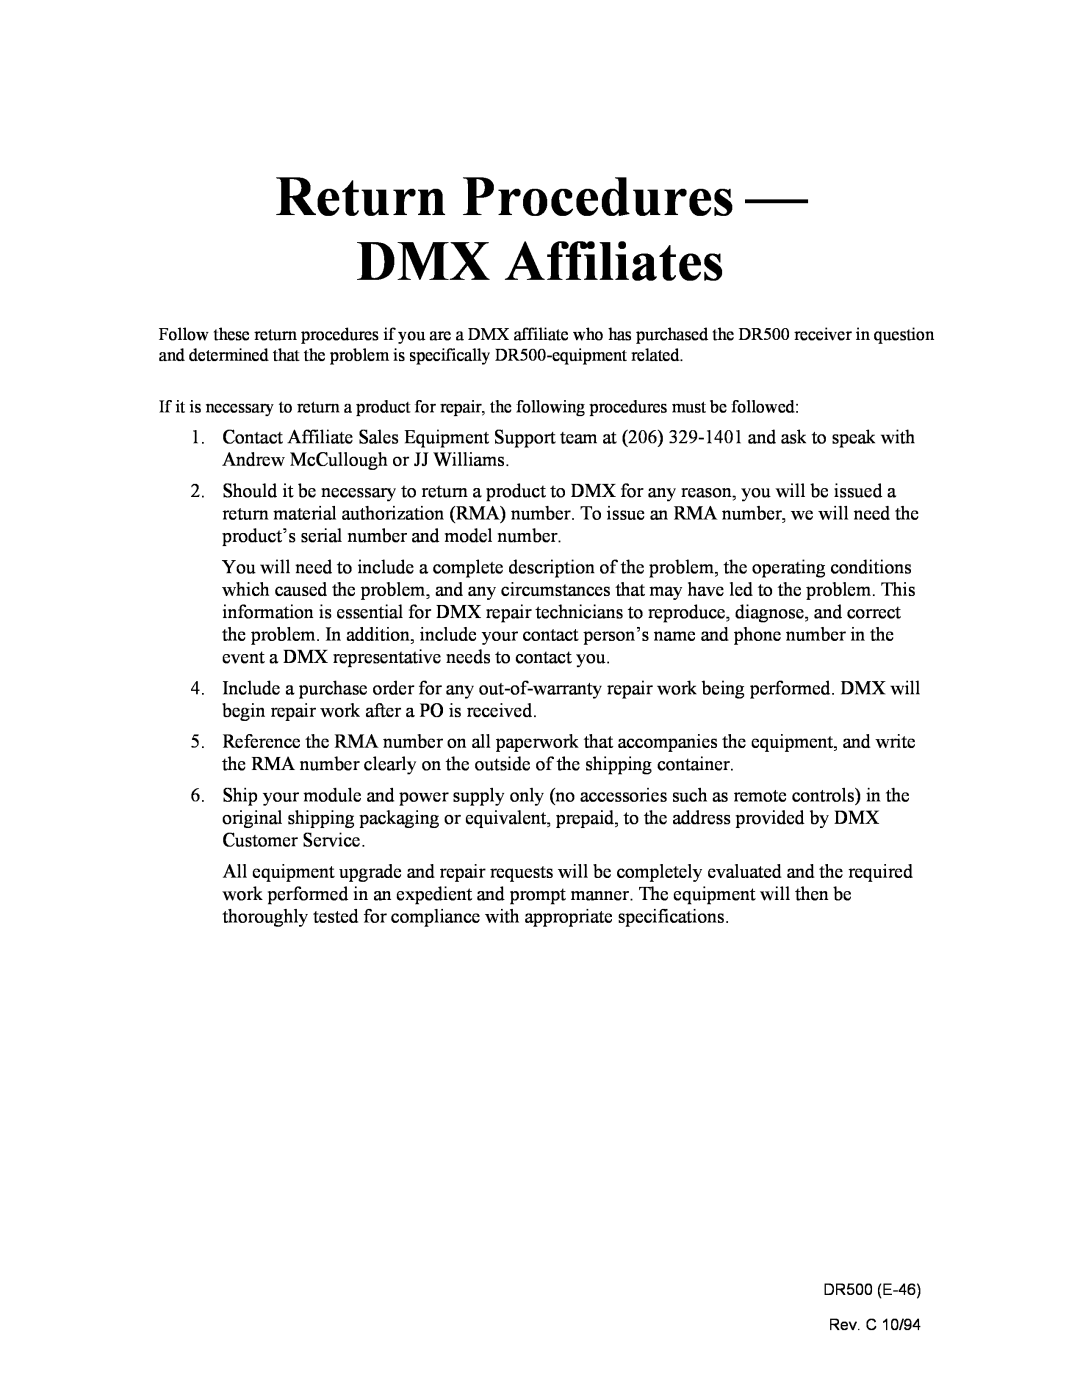 Philips manual Return Procedures  DMX Affiliates, DR500 E-46 Rev. C 10/94 